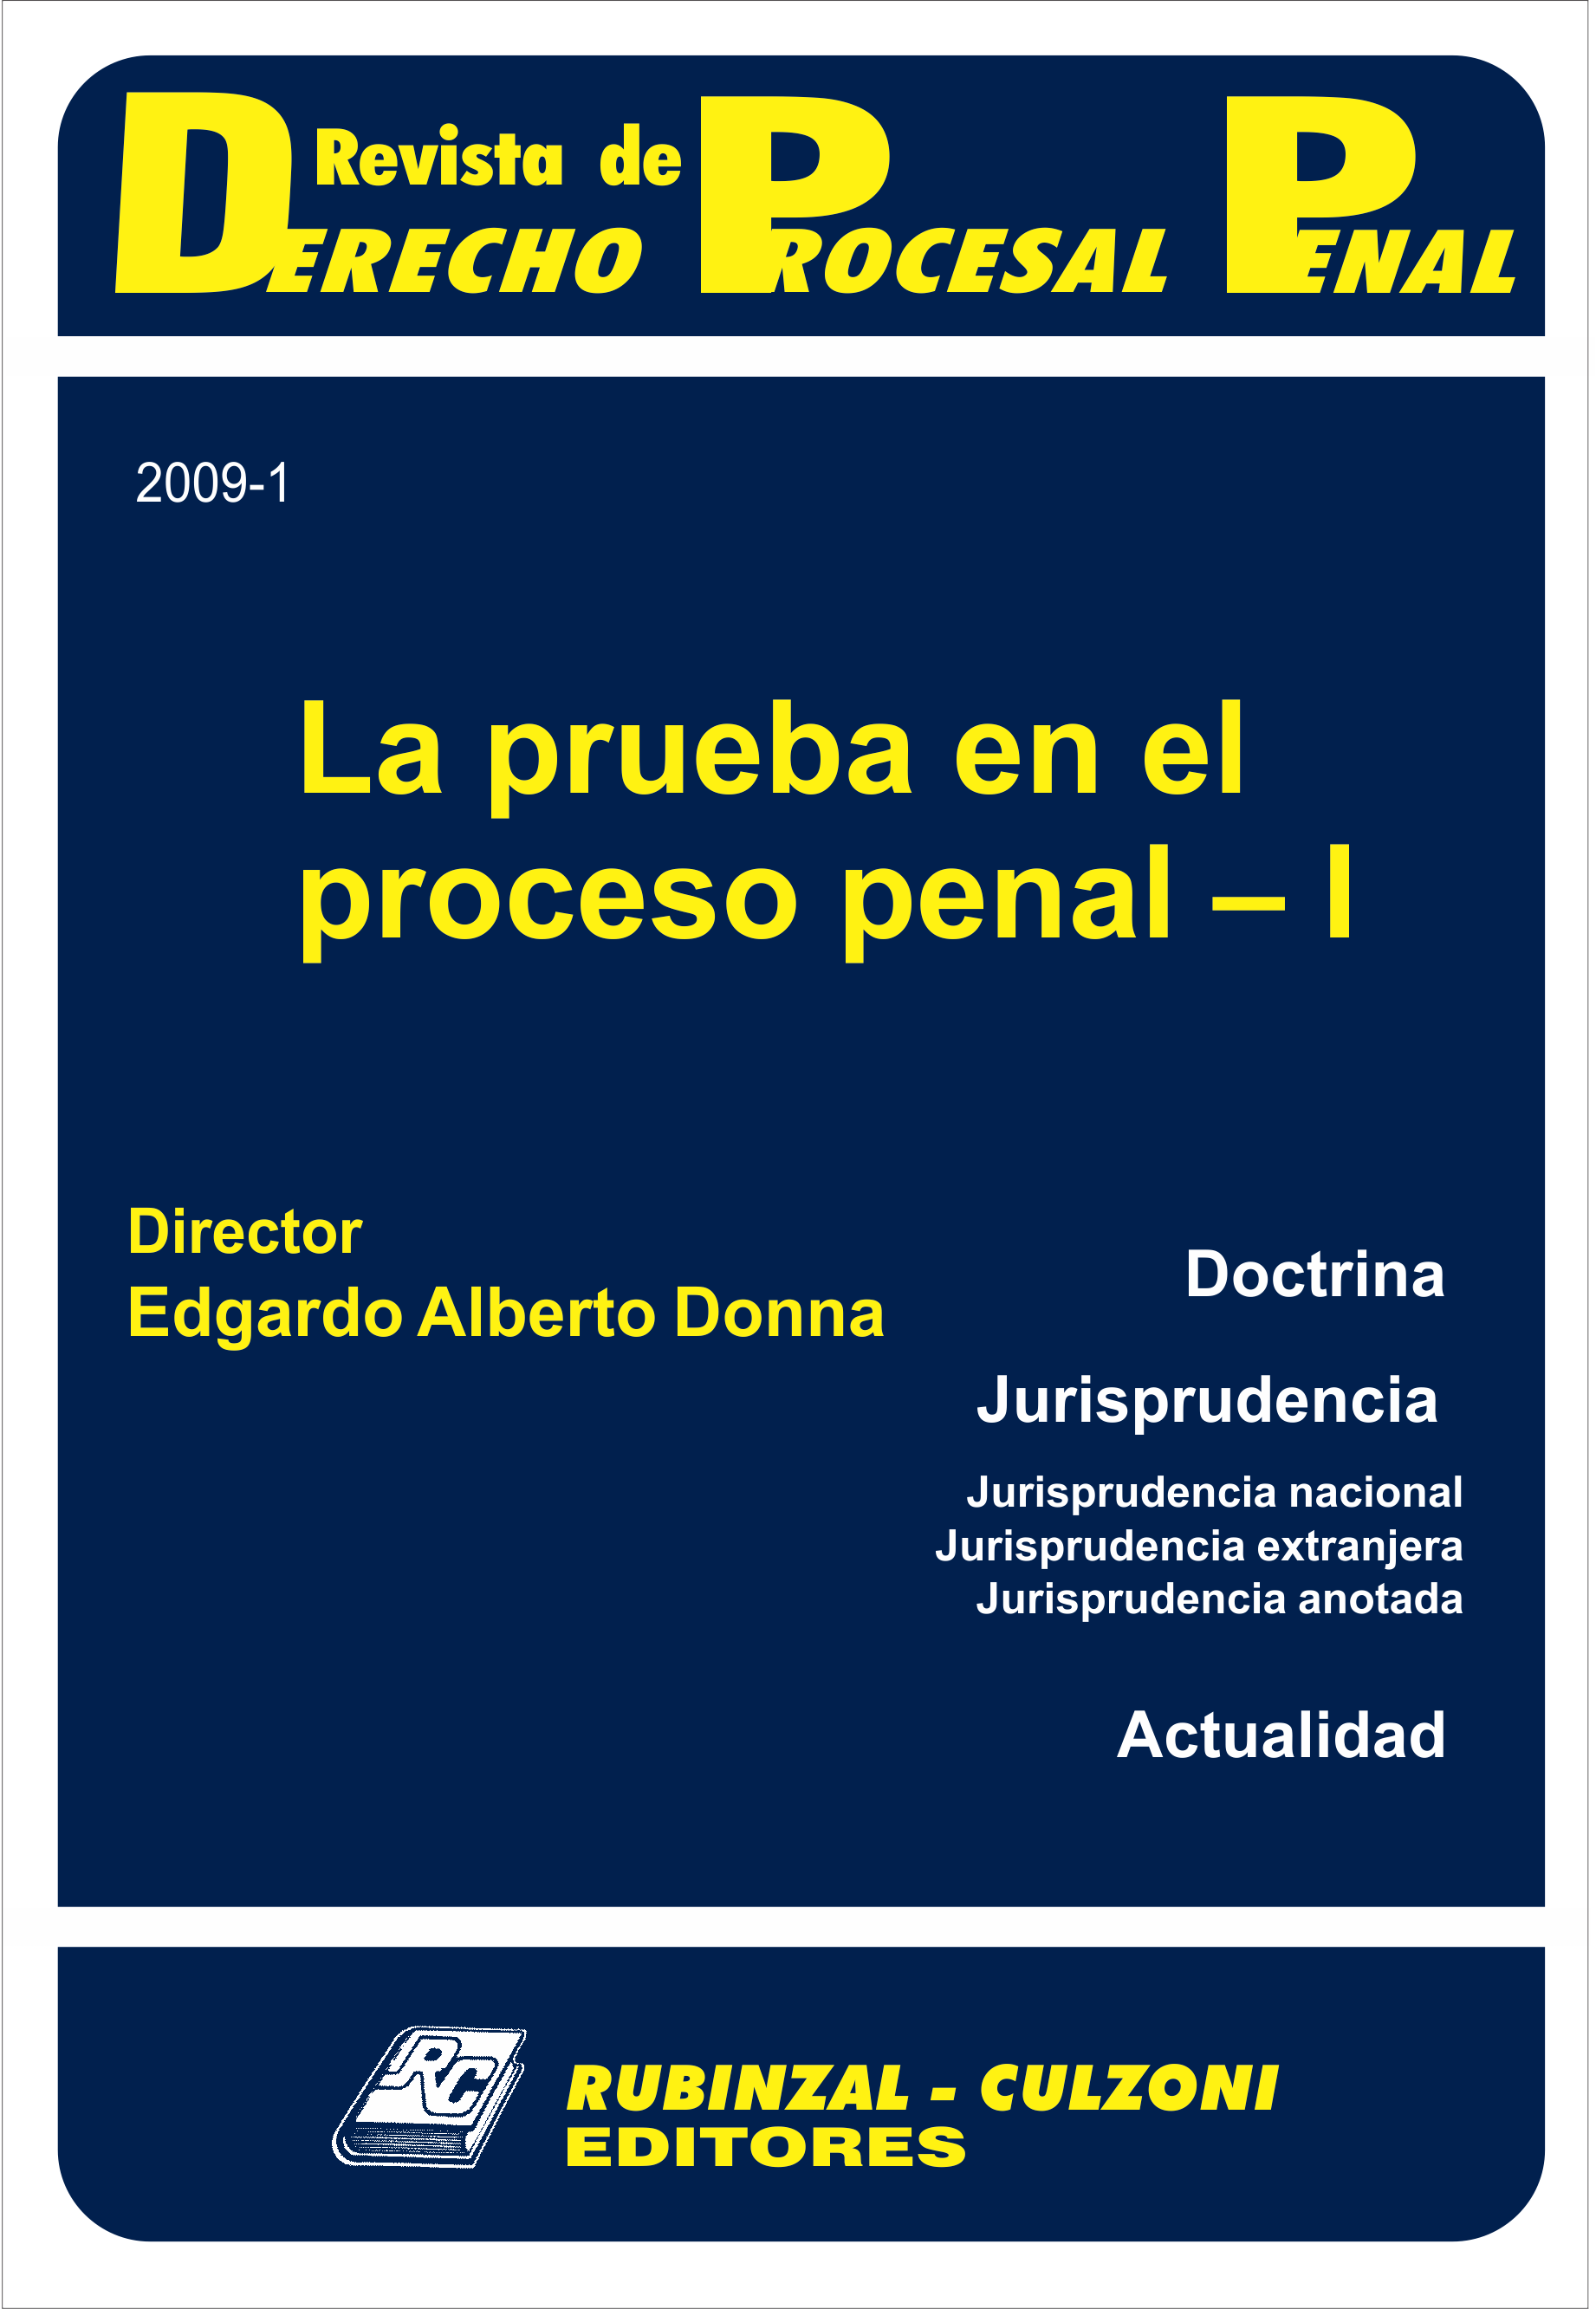 Revista de Derecho Procesal Penal - La prueba en el proceso penal - I